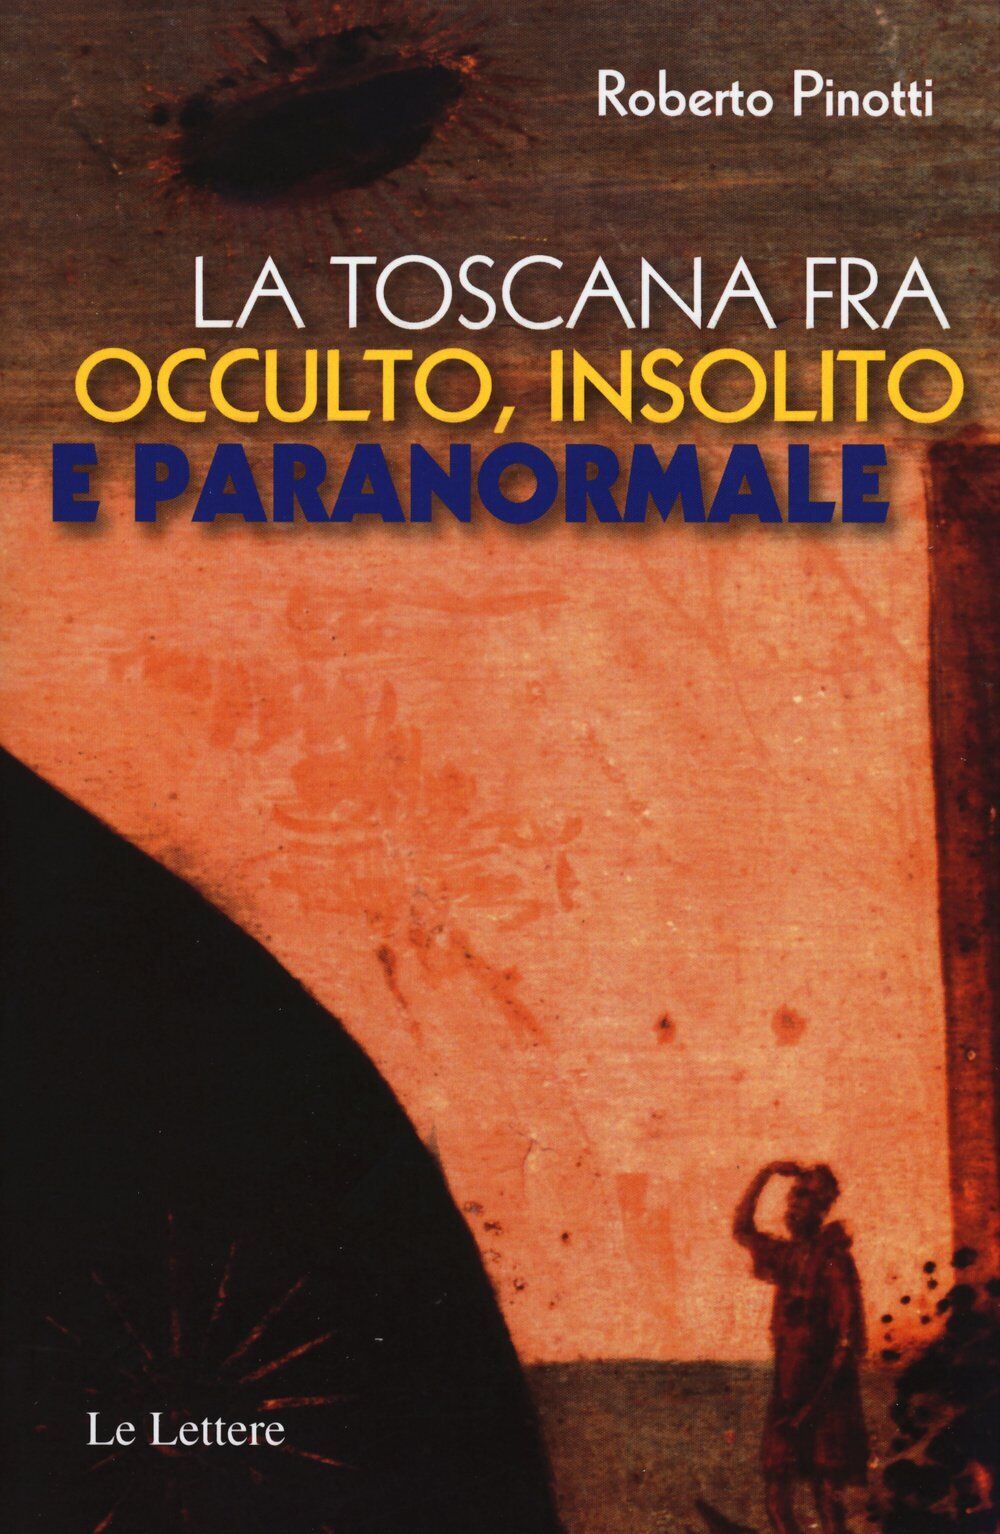 La Toscana fra occulto, insolito e paranormale - Roberto Pinotti-Le lettere,2015 libro usato